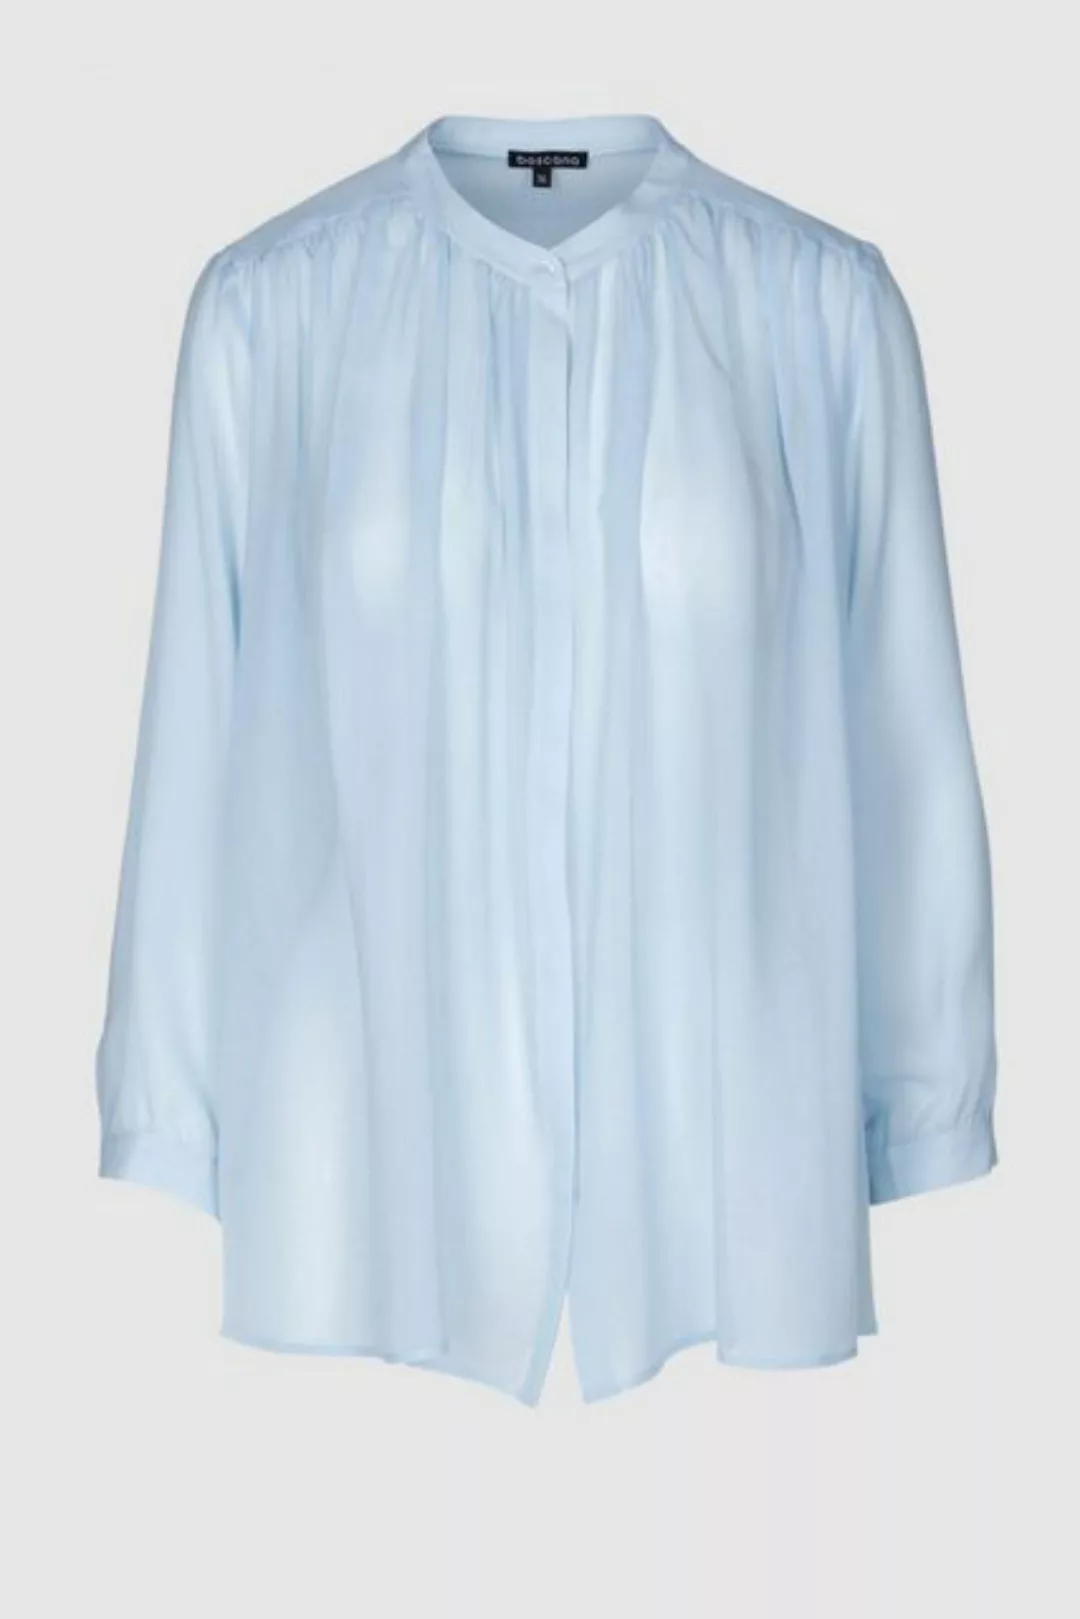 Boscana Seidenbluse Damenoberteil Bluse aus reiner Seide - Weiß, Blau oder günstig online kaufen